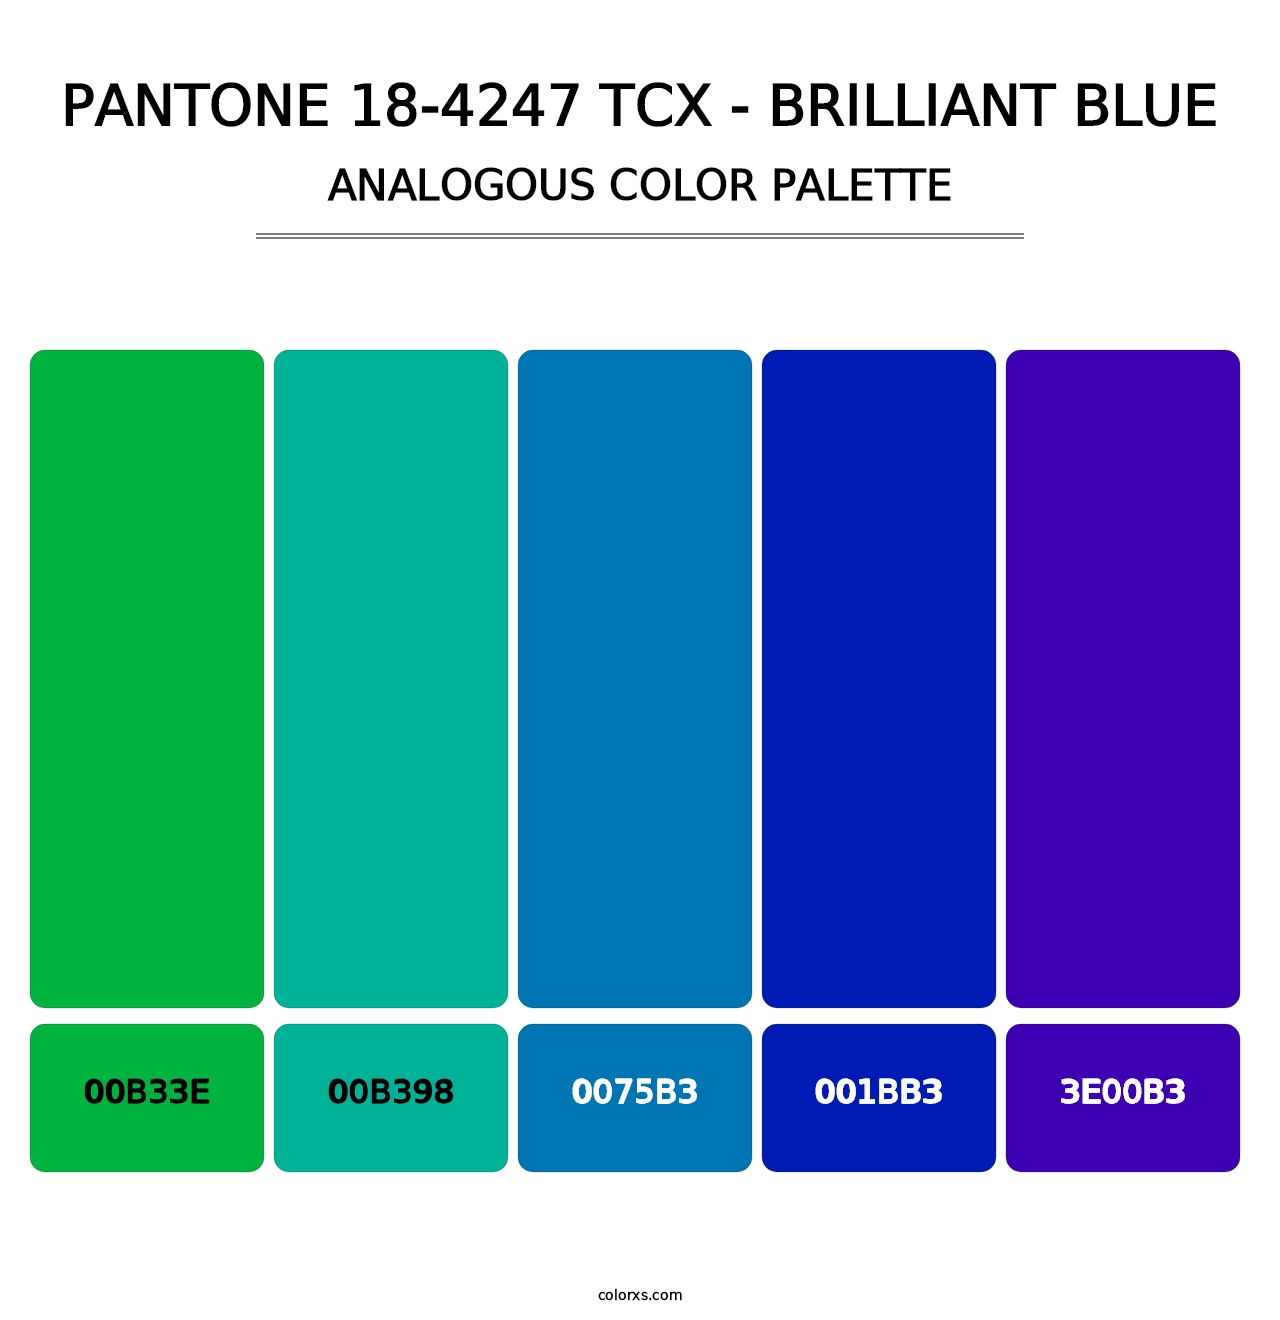 PANTONE 18-4247 TCX - Brilliant Blue - Analogous Color Palette